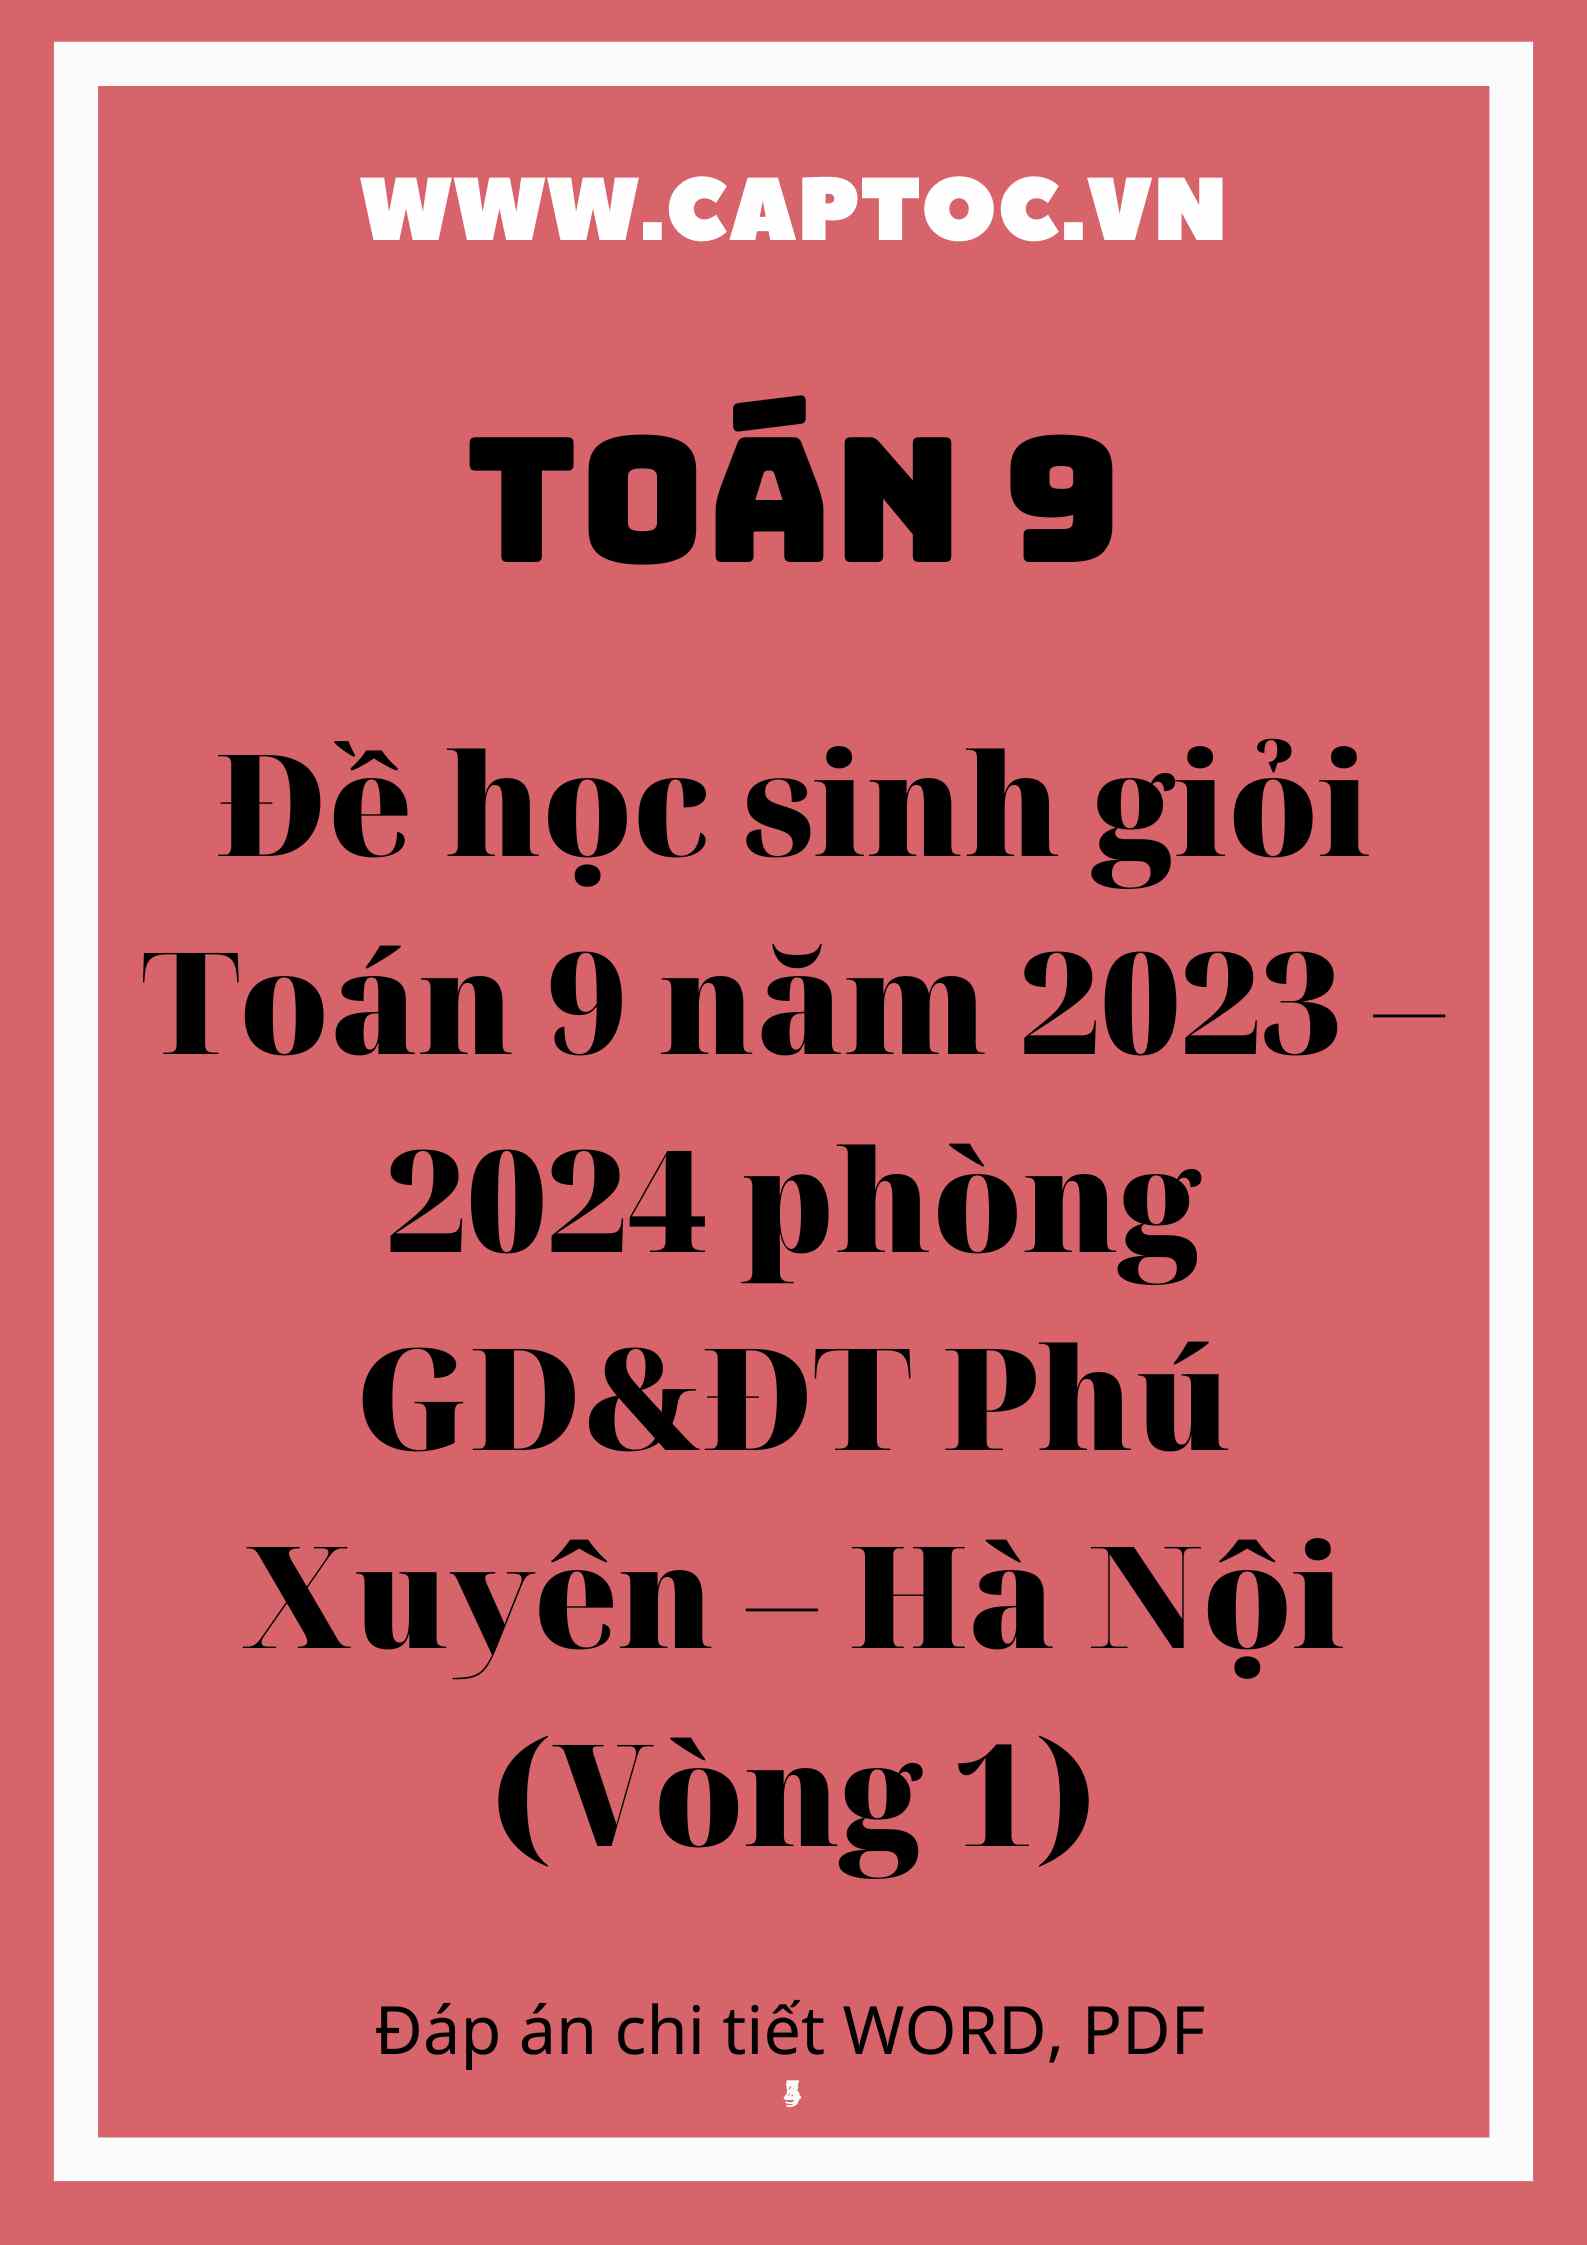 Đề học sinh giỏi Toán 9 năm 2023 – 2024 phòng GD&ĐT Phú Xuyên – Hà Nội (Vòng 1)